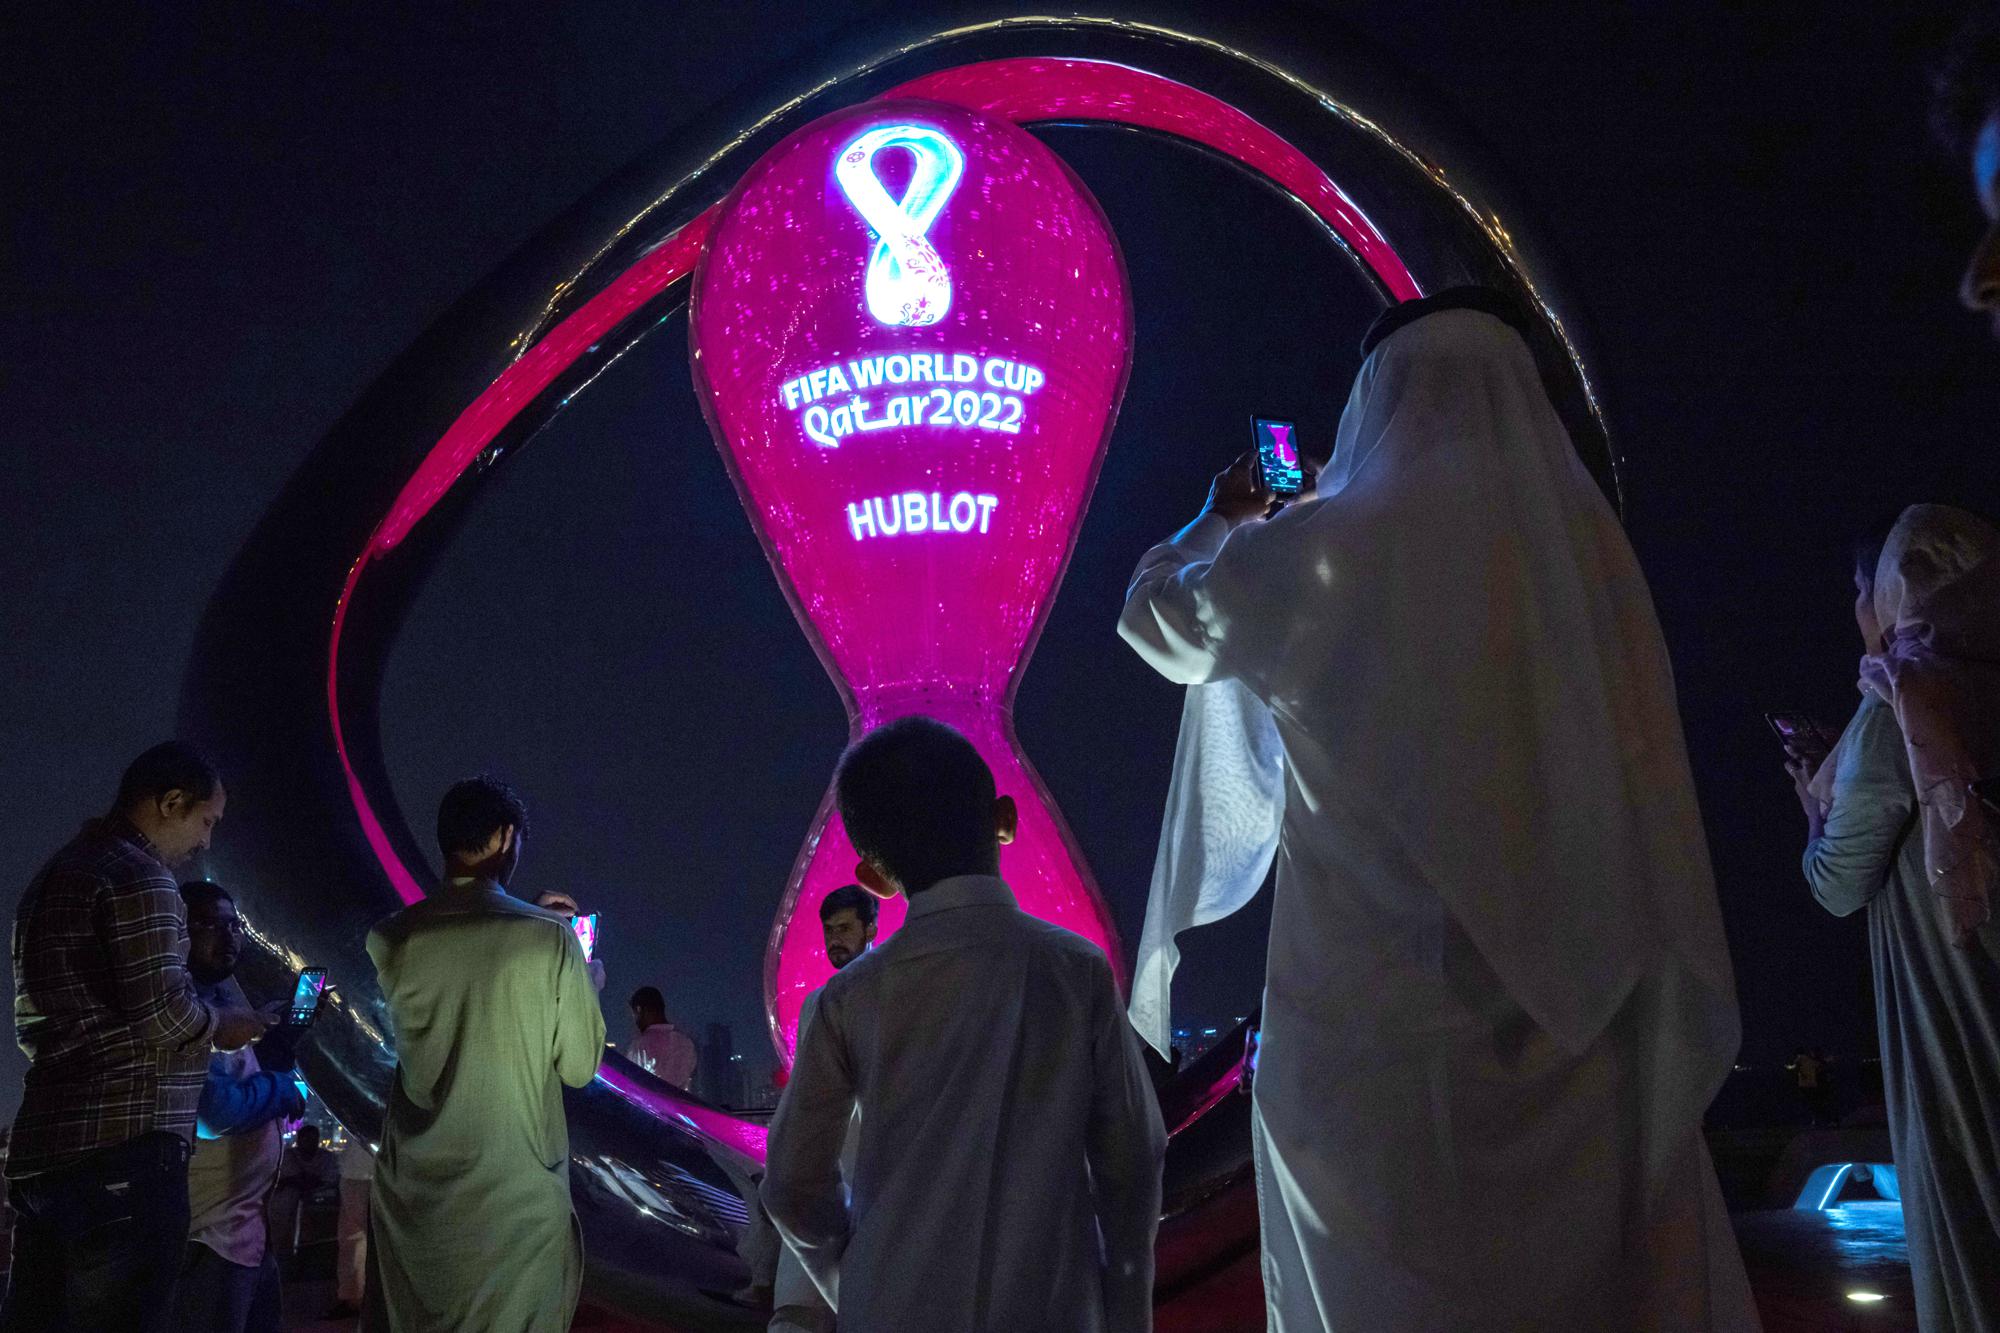 Chiêm ngưỡng hình ảnh sự kiện World Cup sắp diễn ra tại Qatar  - Ảnh 4.